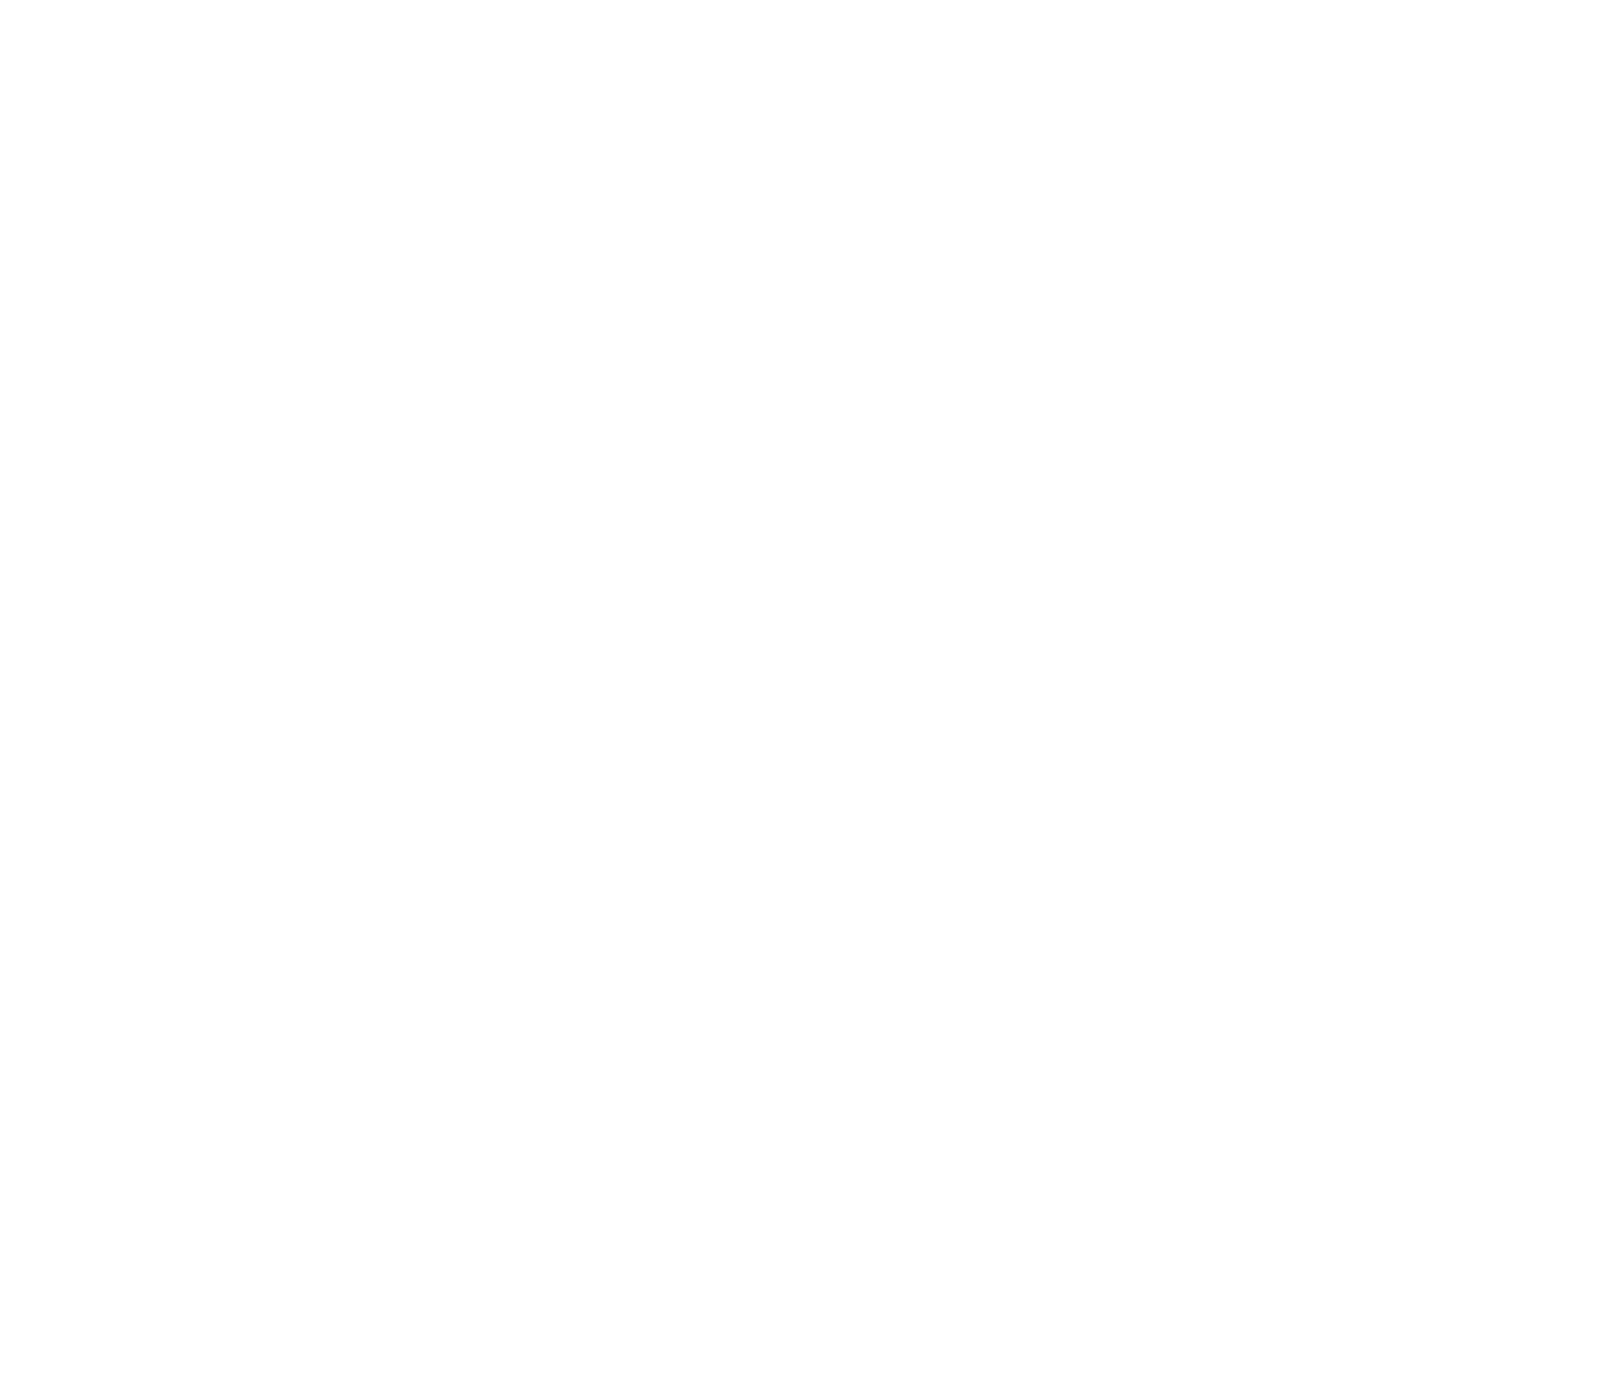 Dr. Paul Gardner Naples Plastic Surgeon